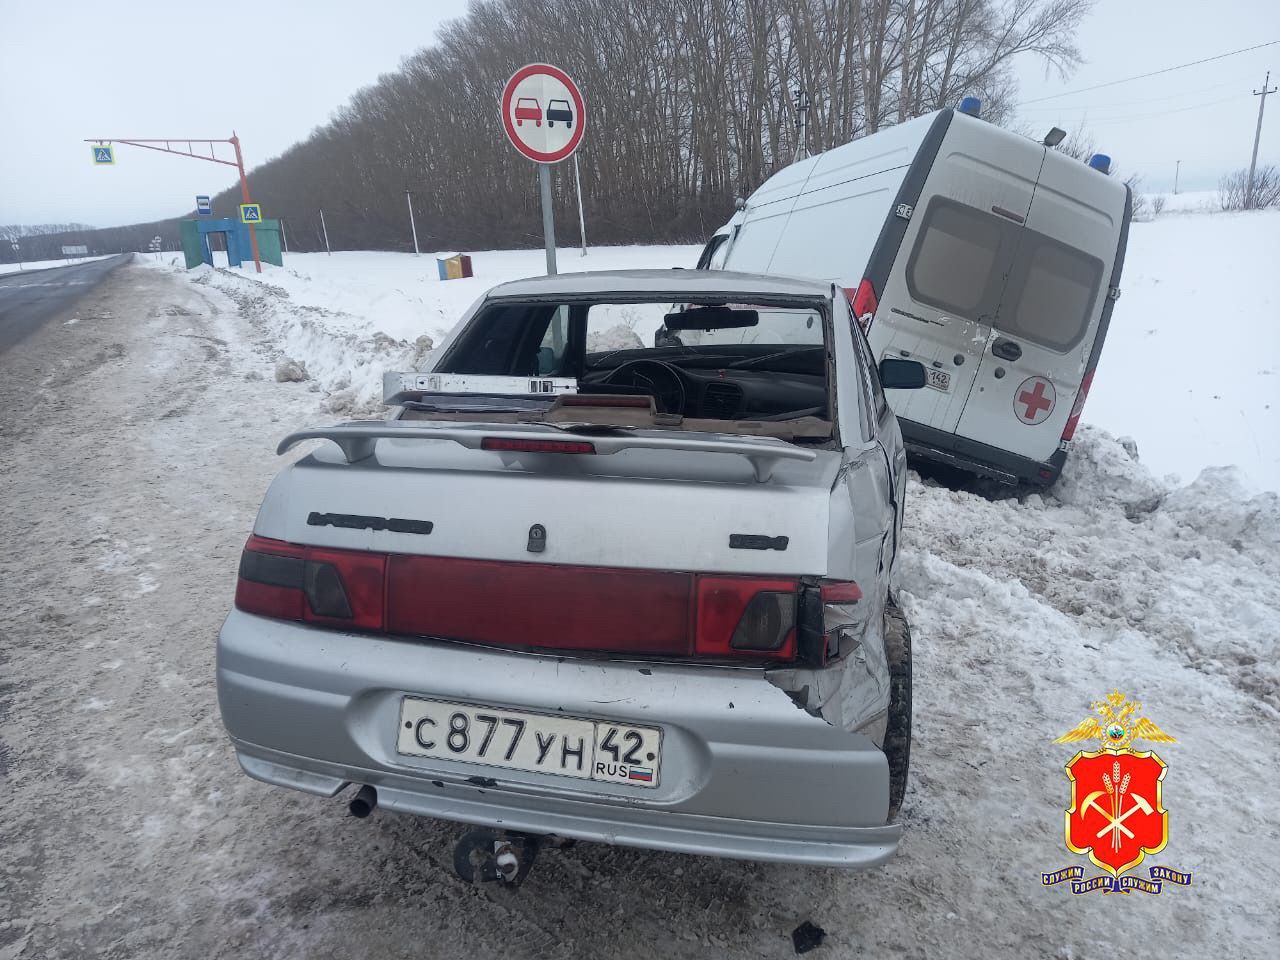 МВД: водитель без прав врезался в скорую помощь в Кузбассе, пострадали медики